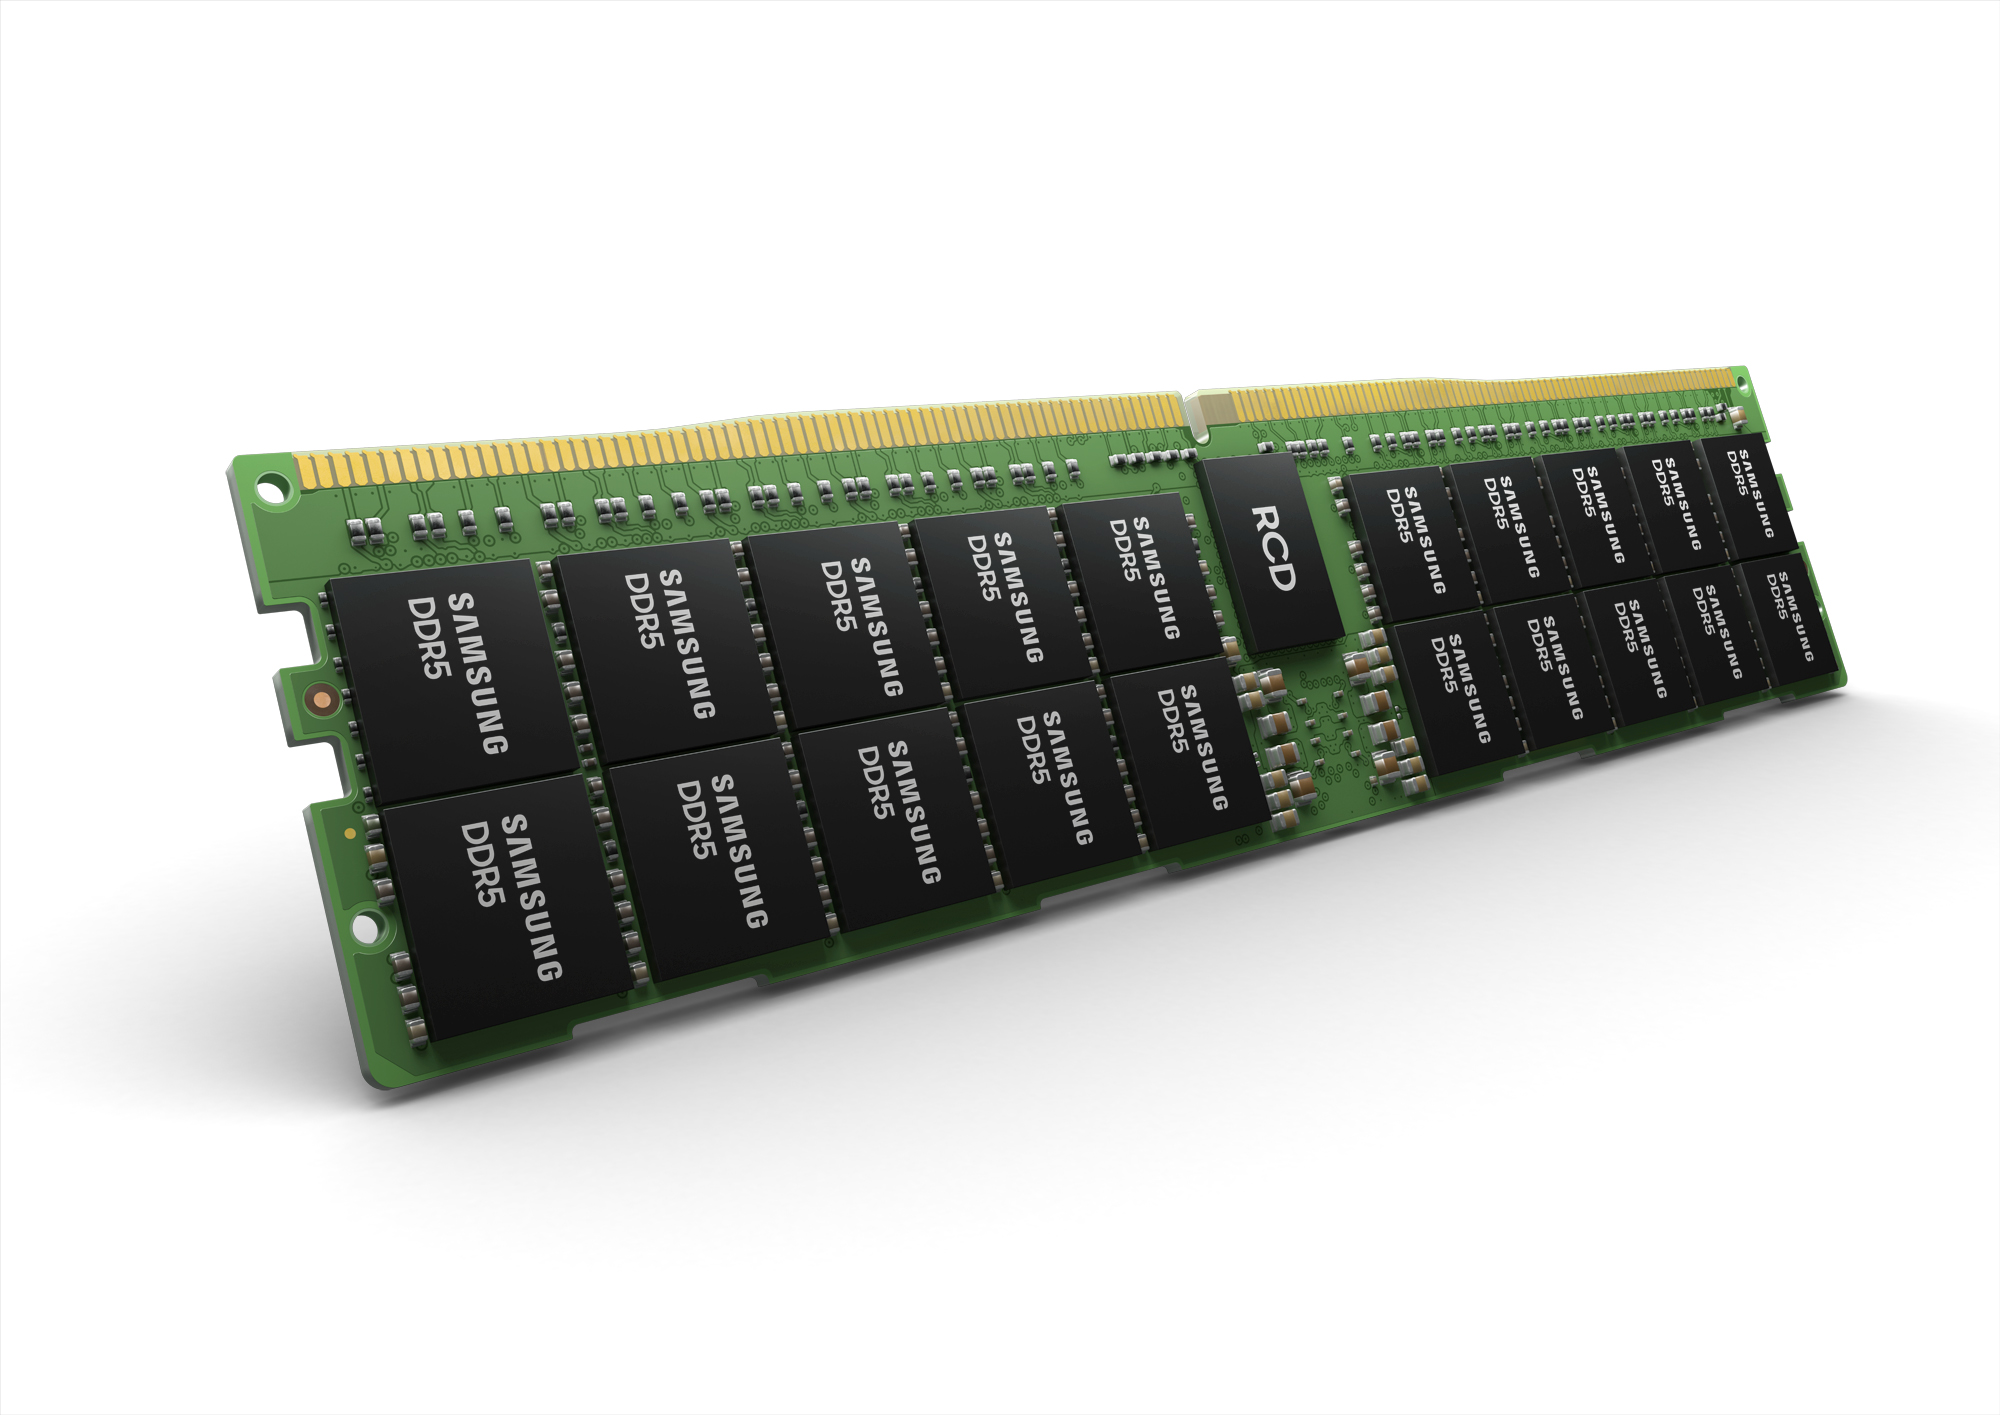 Immagine pubblicata in relazione al seguente contenuto: Samsung annuncia lo sviluppo di moduli di memoria DDR5 da 512GB | Nome immagine: news31852_Samsung-DDR5-512GB_1.jpg